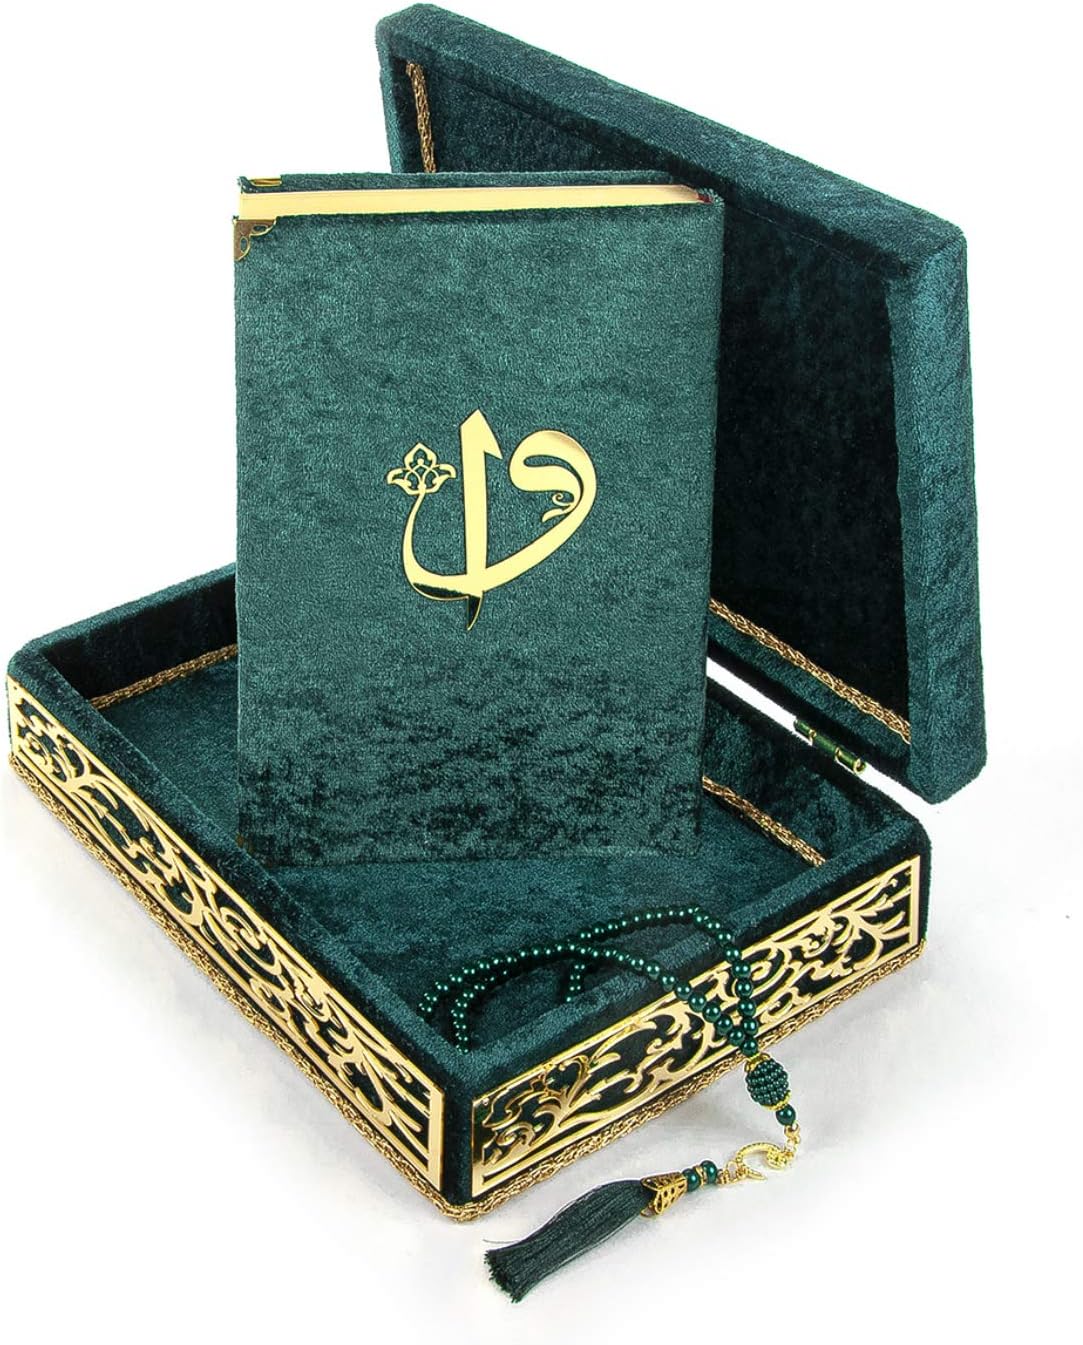 مجموعة صندوق انيق من المخمل مزخرف باحرف عربية مع كتاب قرآن كريم